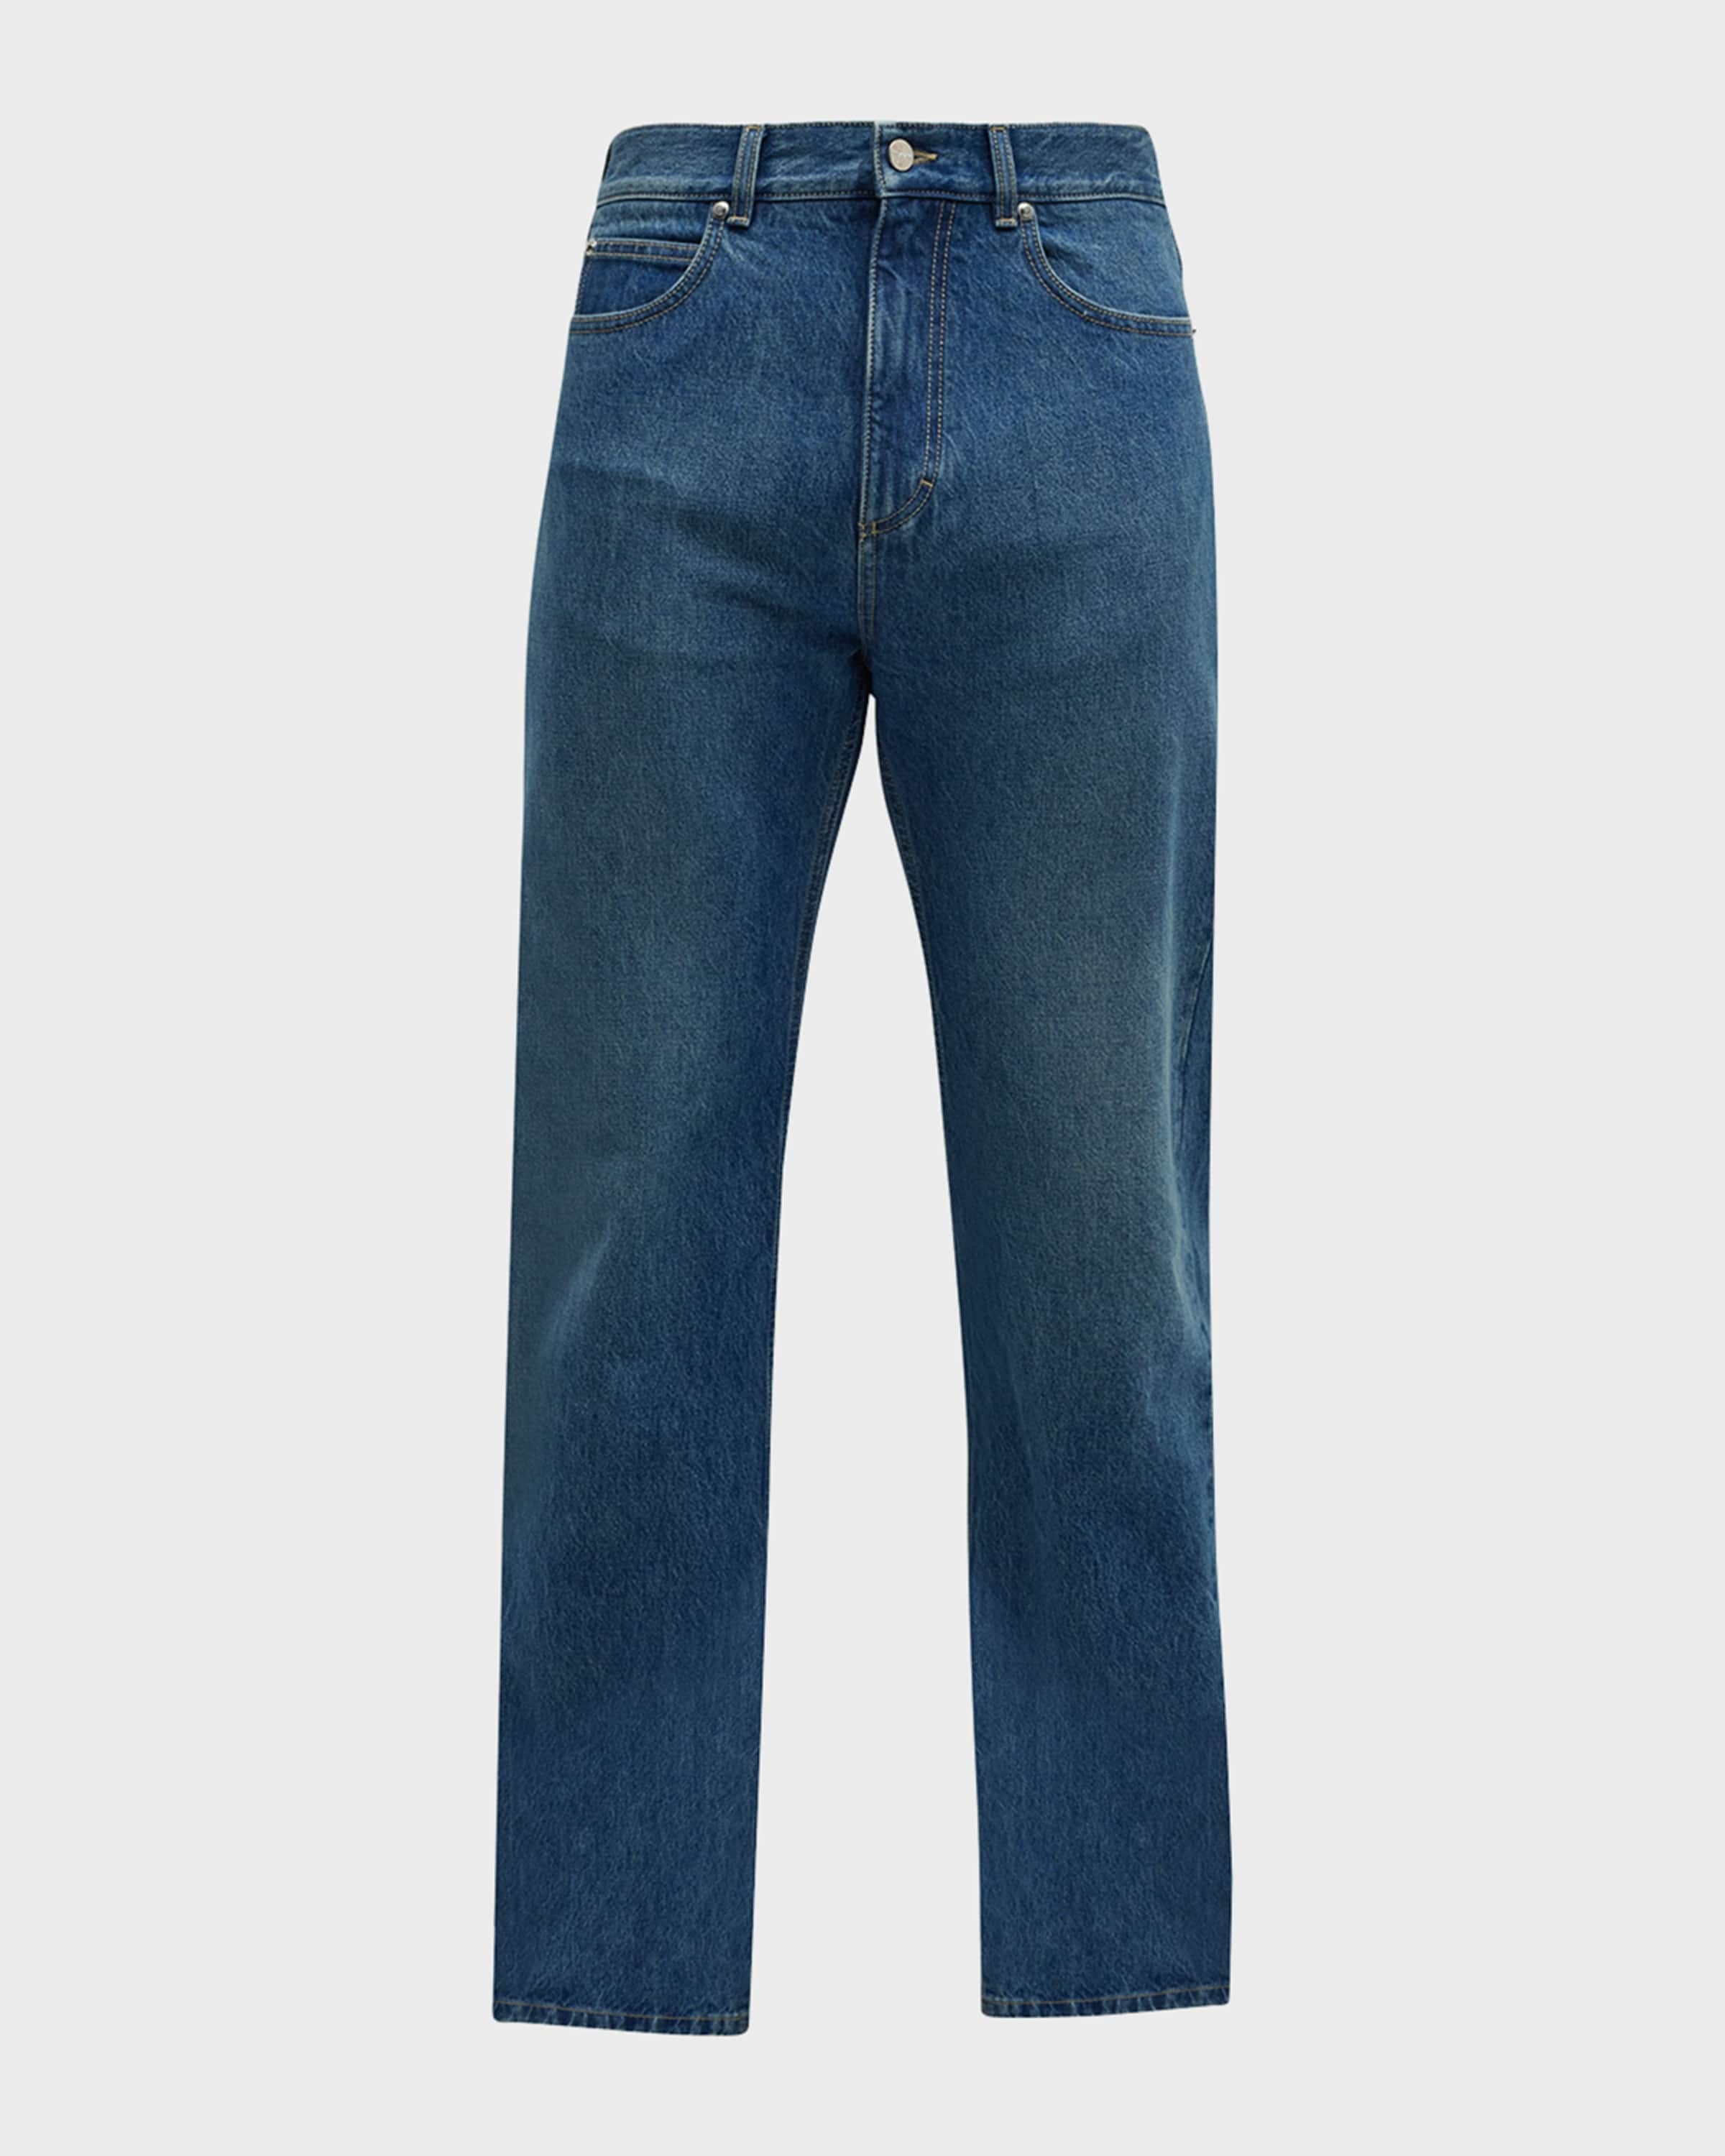 Men's Straight-Leg Jeans - 1